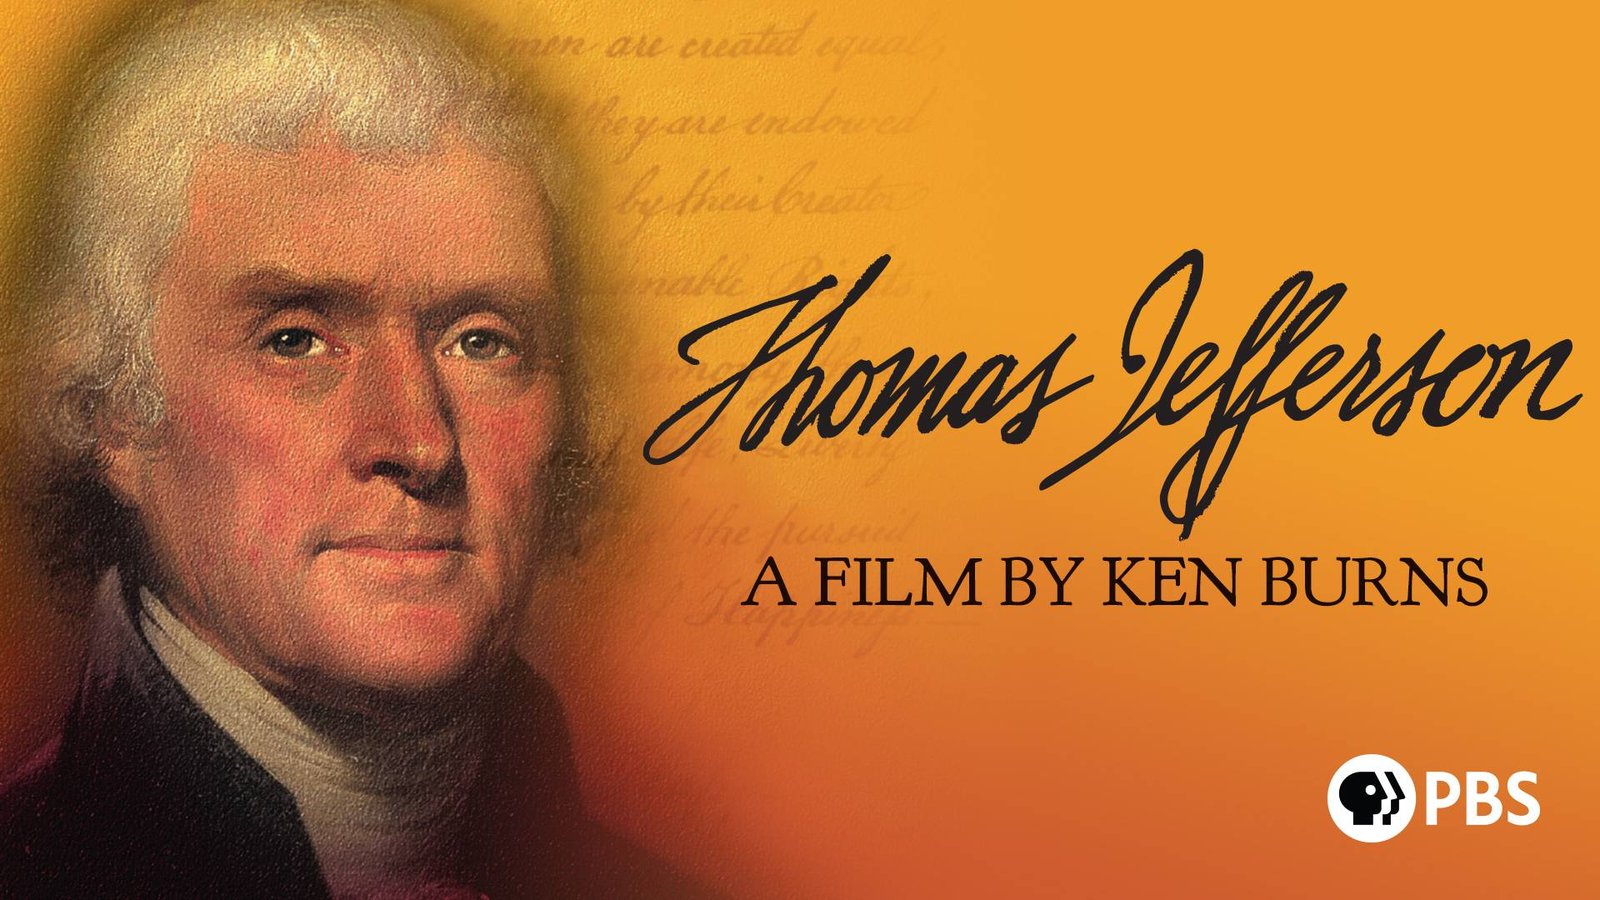 Ken Burns: Thomas Jefferson